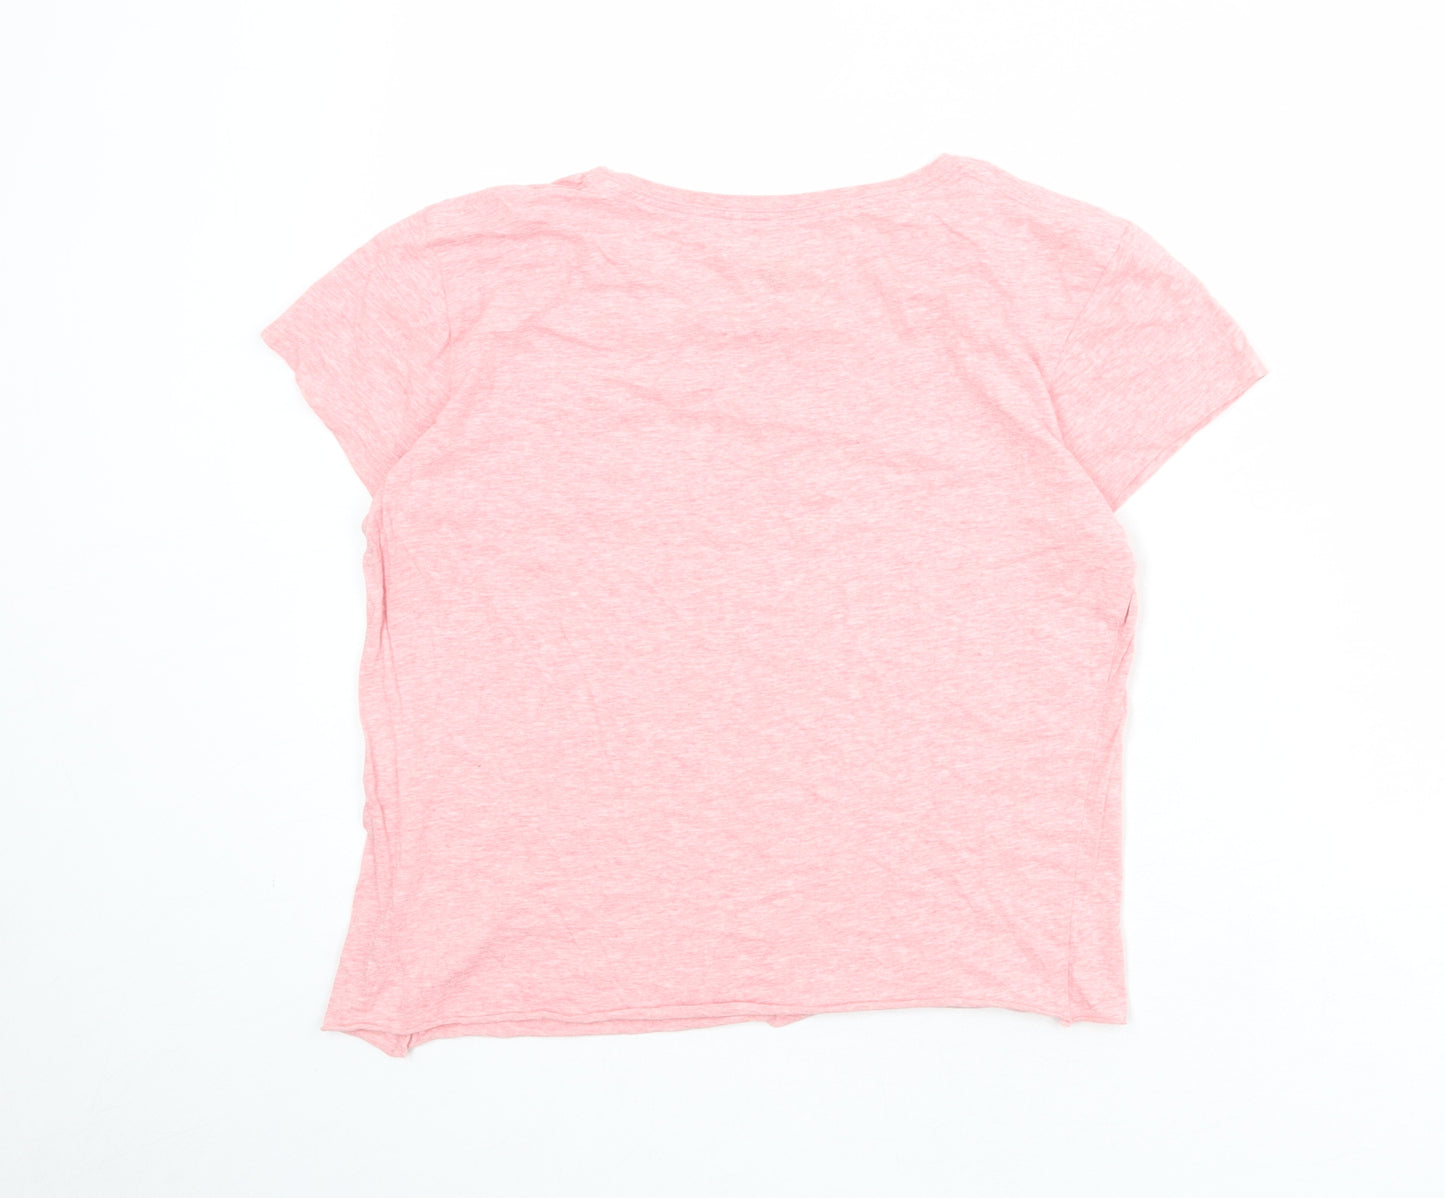 ROXY Womens Pink 100% Cotton Basic T-Shirt Size XL Round Neck